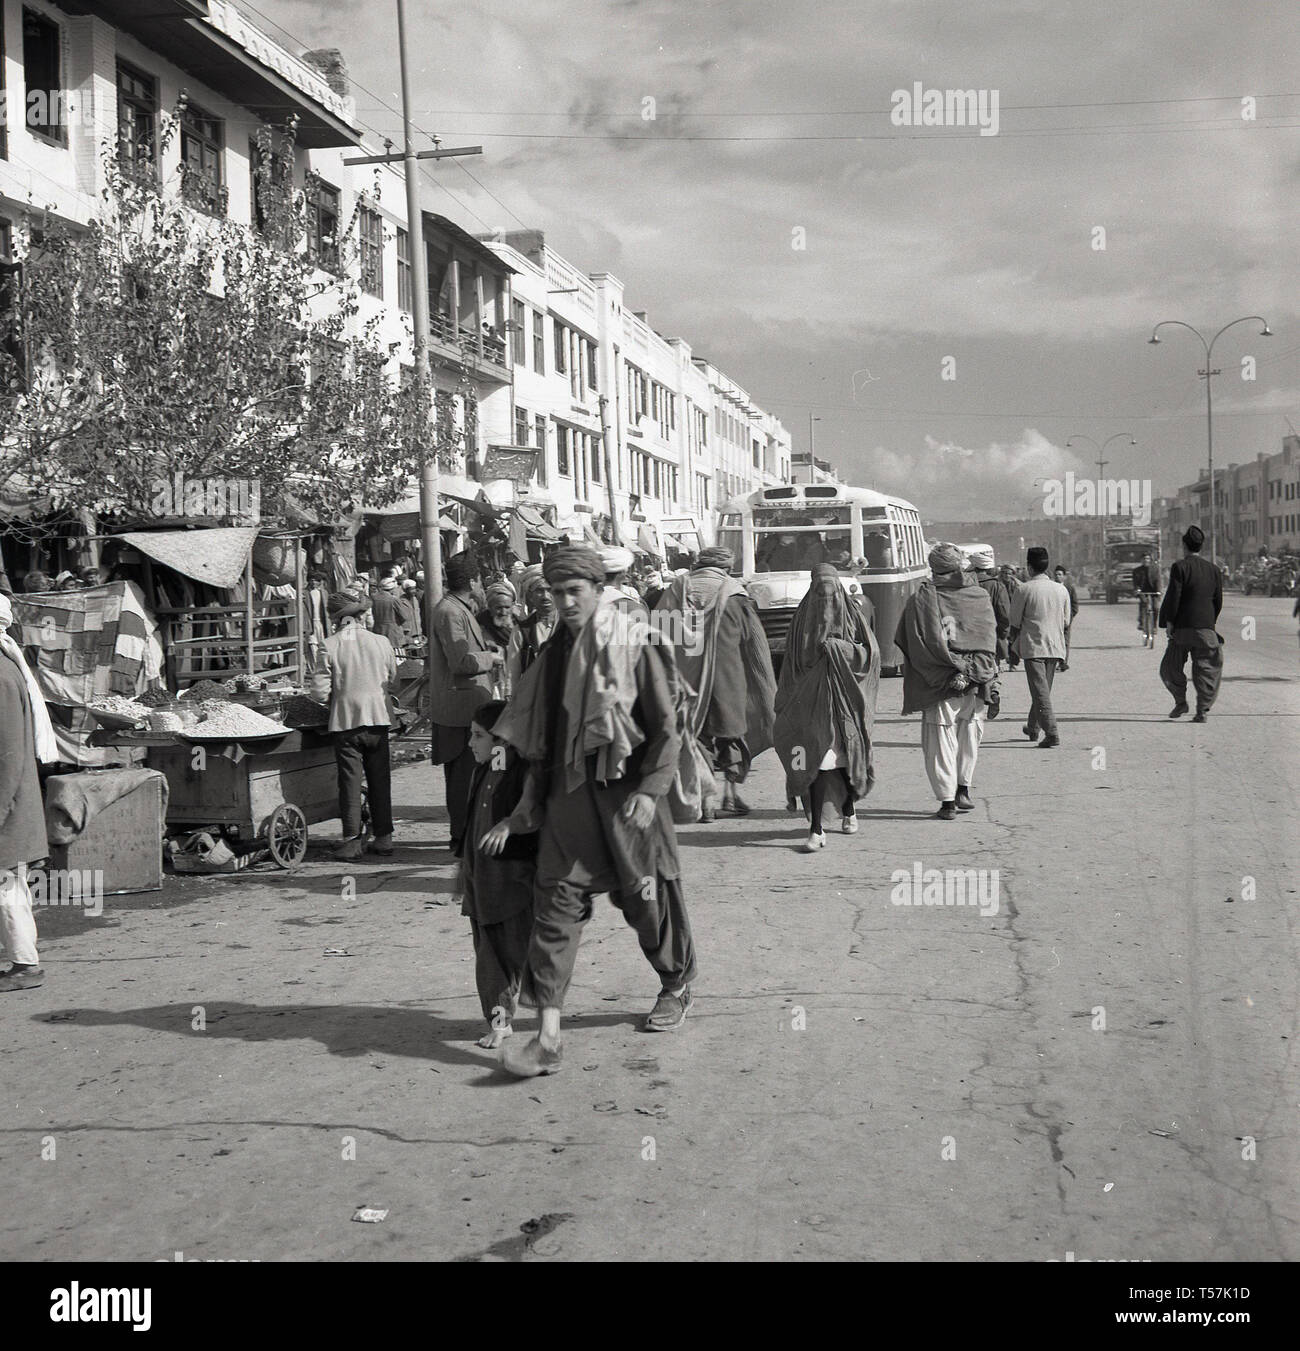 Années 1950, Kaboul, Afghanistan, les afghans en costume national dans une large rue poussiéreuse passant les étals du marché dans le centre-ville. Banque D'Images